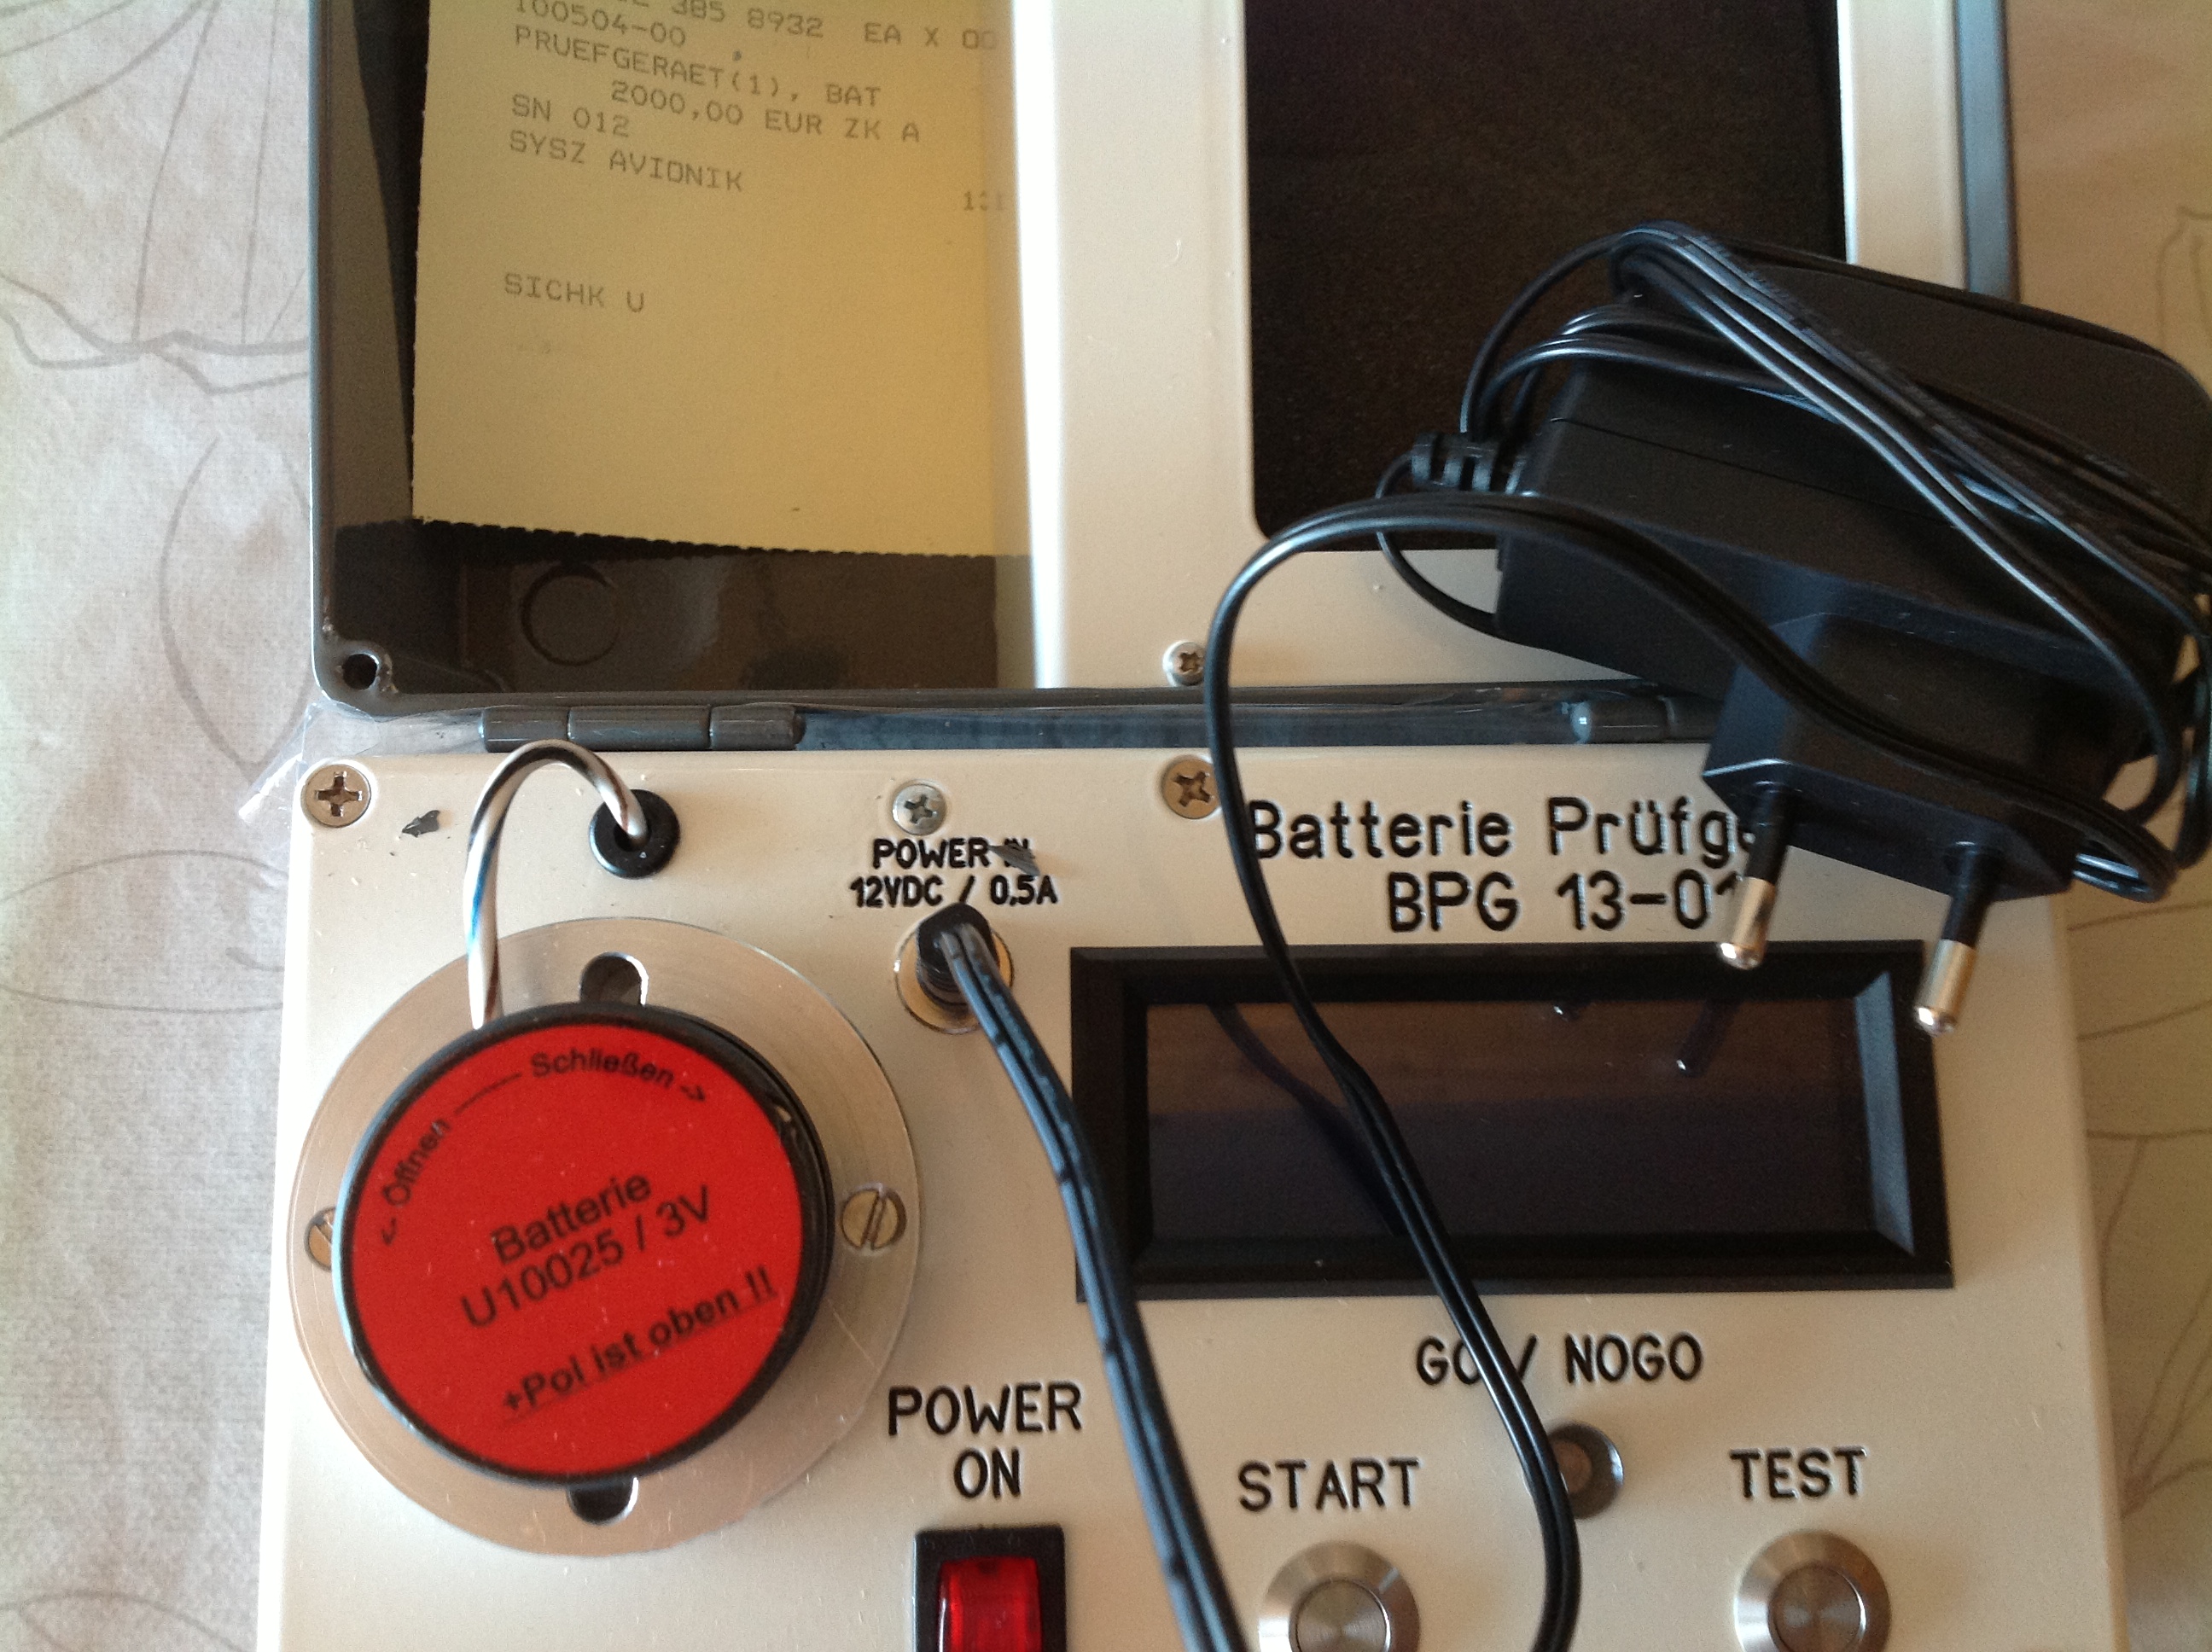 Batterie-Prüfgerät BPG 13-01